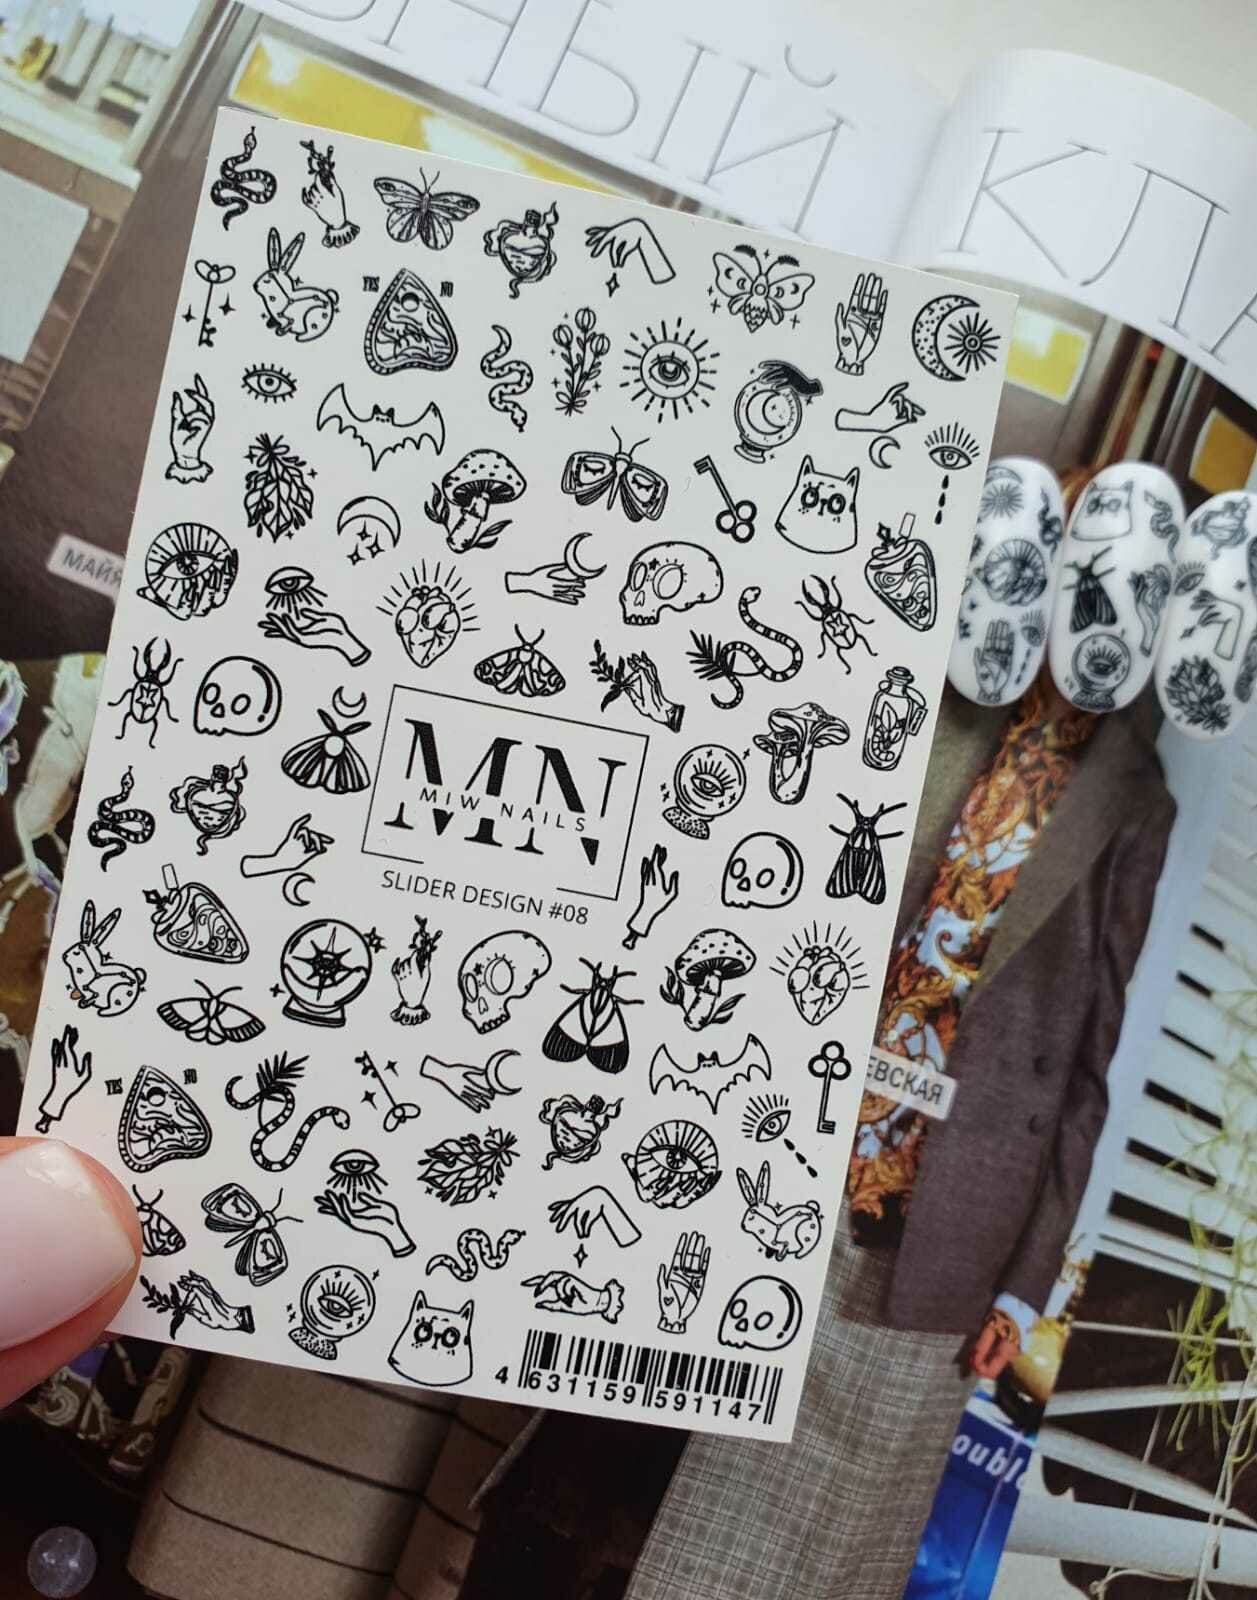 MIW Nails "Слайдеры для ногтей" водные наклейки для дизайна #08 черно-белый символы, магия, колдовство